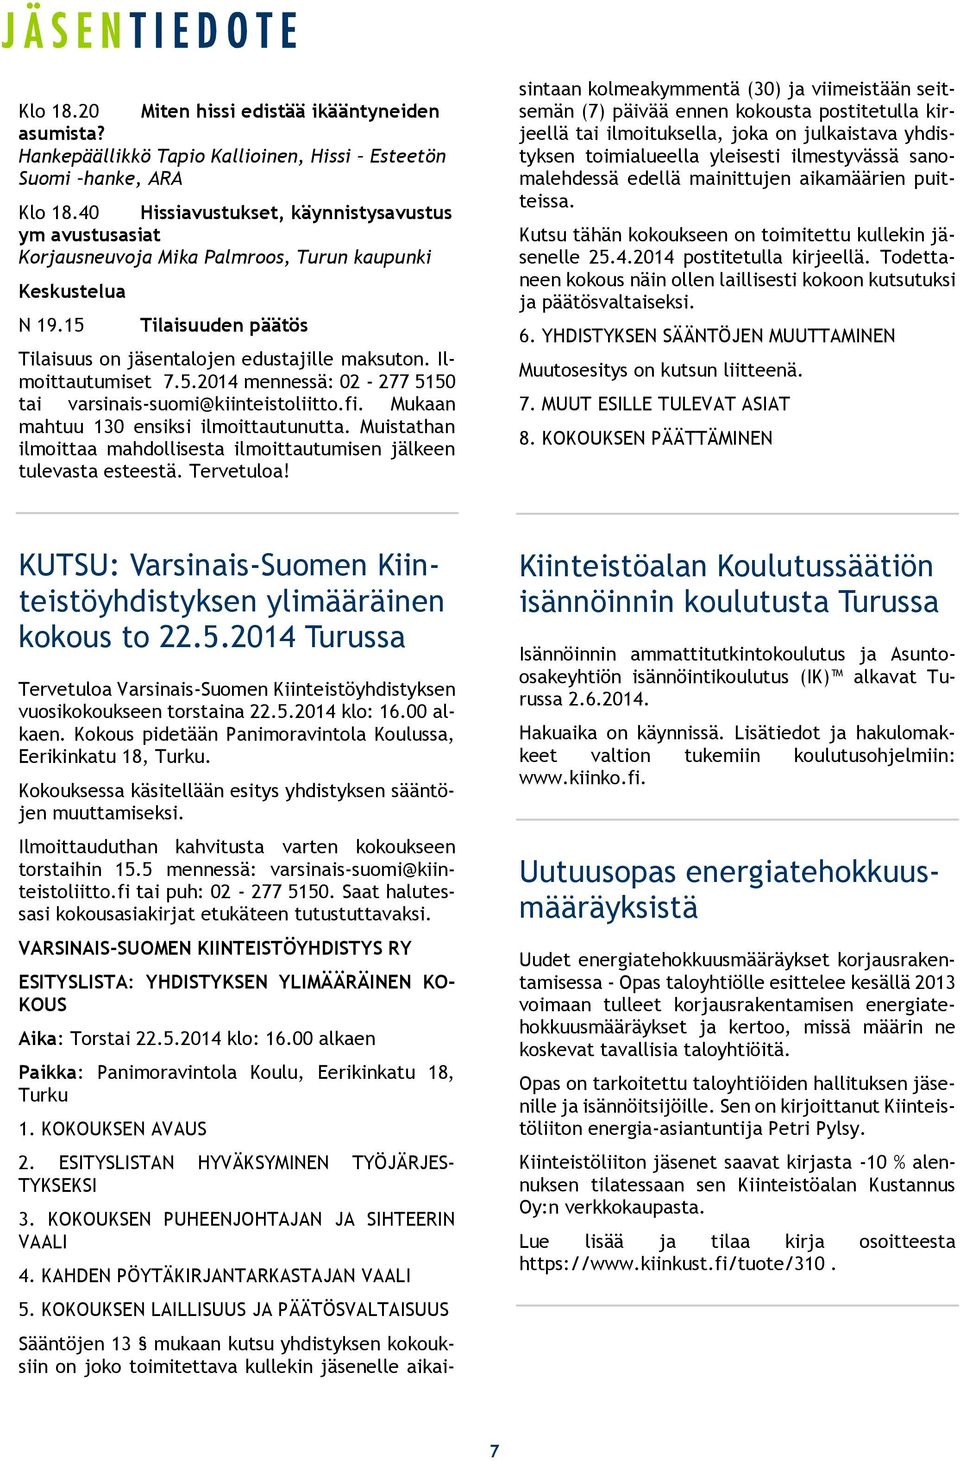 Ilmoittautumiset 7.5.2014 mennessä: 02-277 5150 tai varsinais-suomi@kiinteistoliitto.fi. Mukaan mahtuu 130 ensiksi ilmoittautunutta.